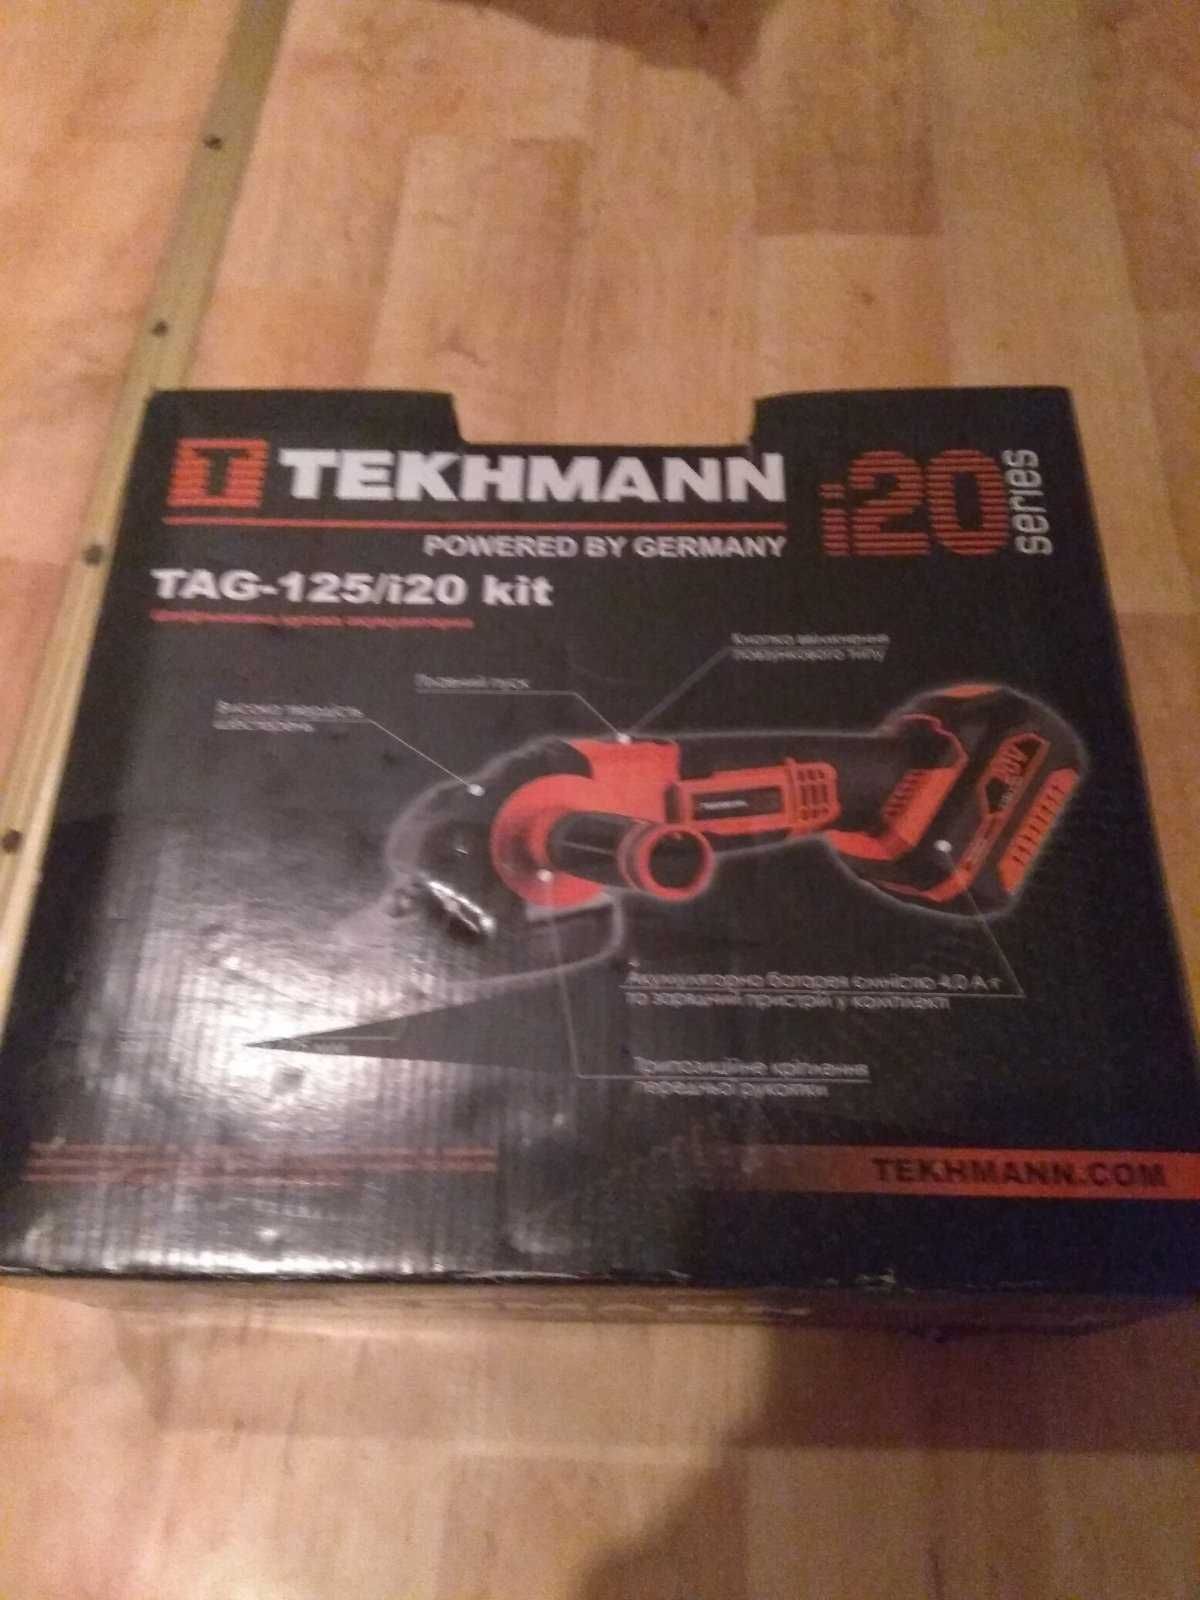 Болгарка аккумуляторная Tekhmann TAG-125/I20 KIT (848392)